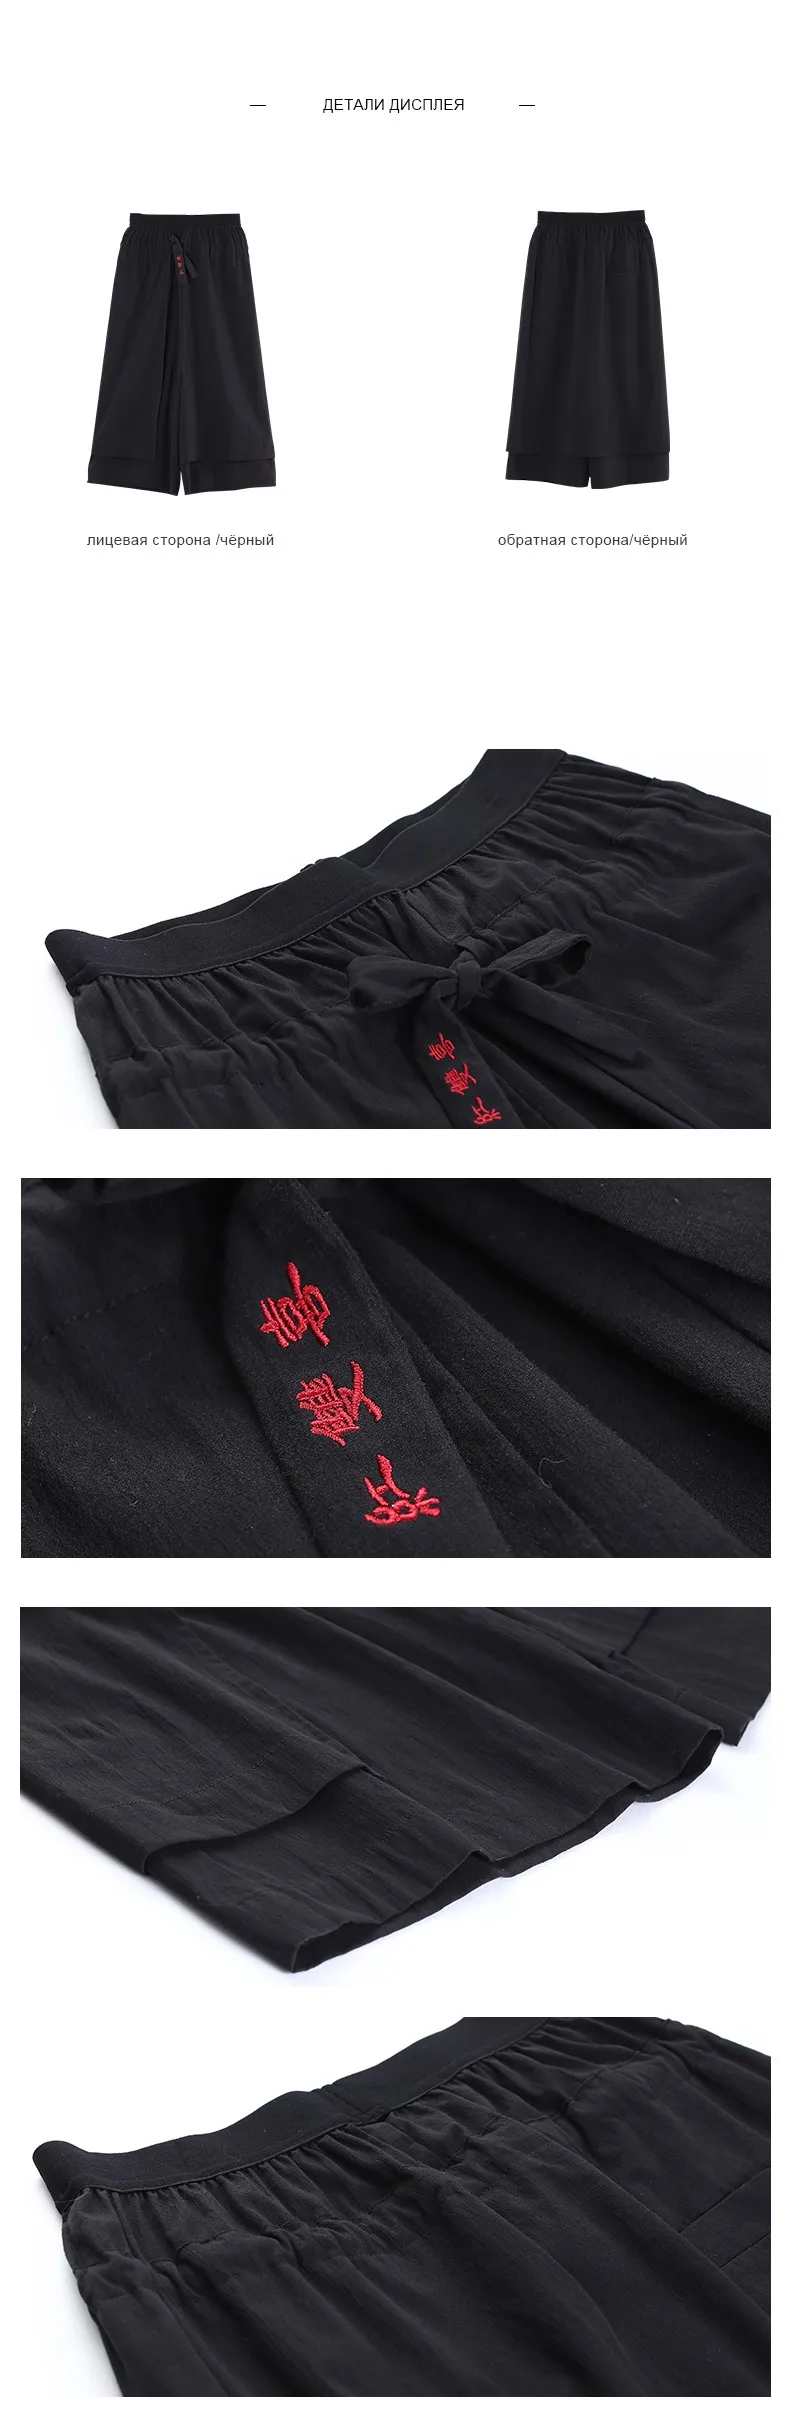 Toyouth летние Широкие штаны корейский стиль узкие укороченные штаны черный эластичный пояс прямые свободные повседневные Капри для женщин